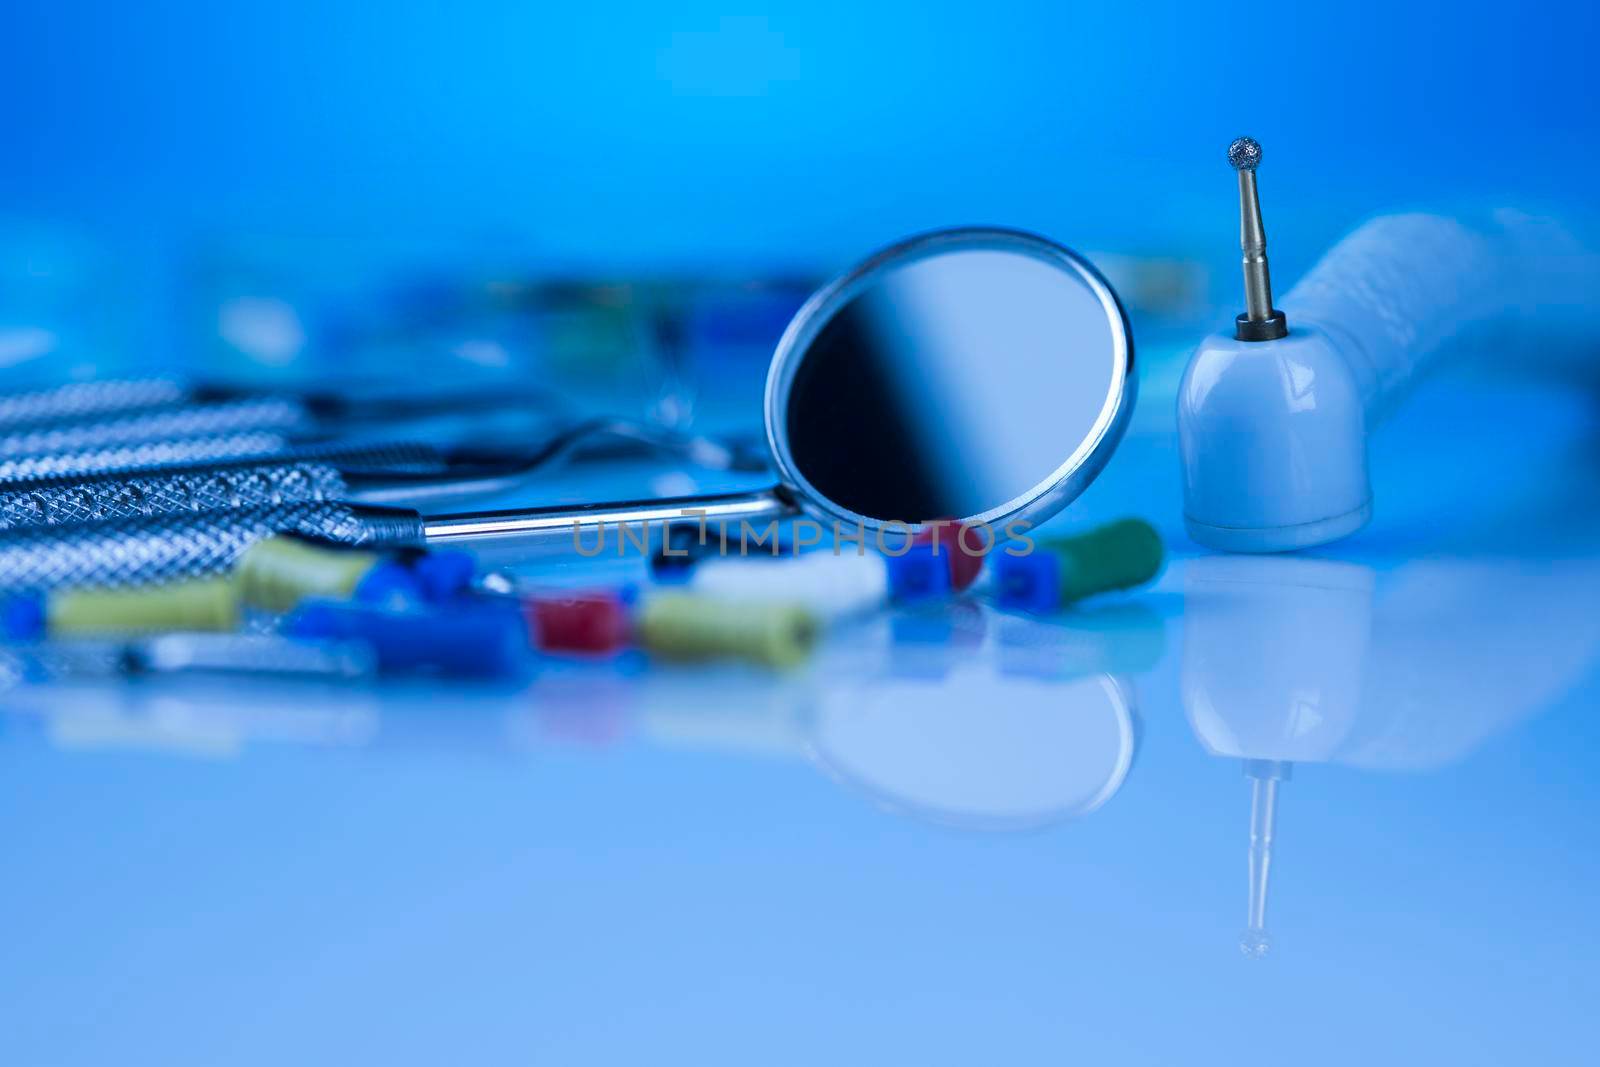 Dentist equipment on blue background by JanPietruszka